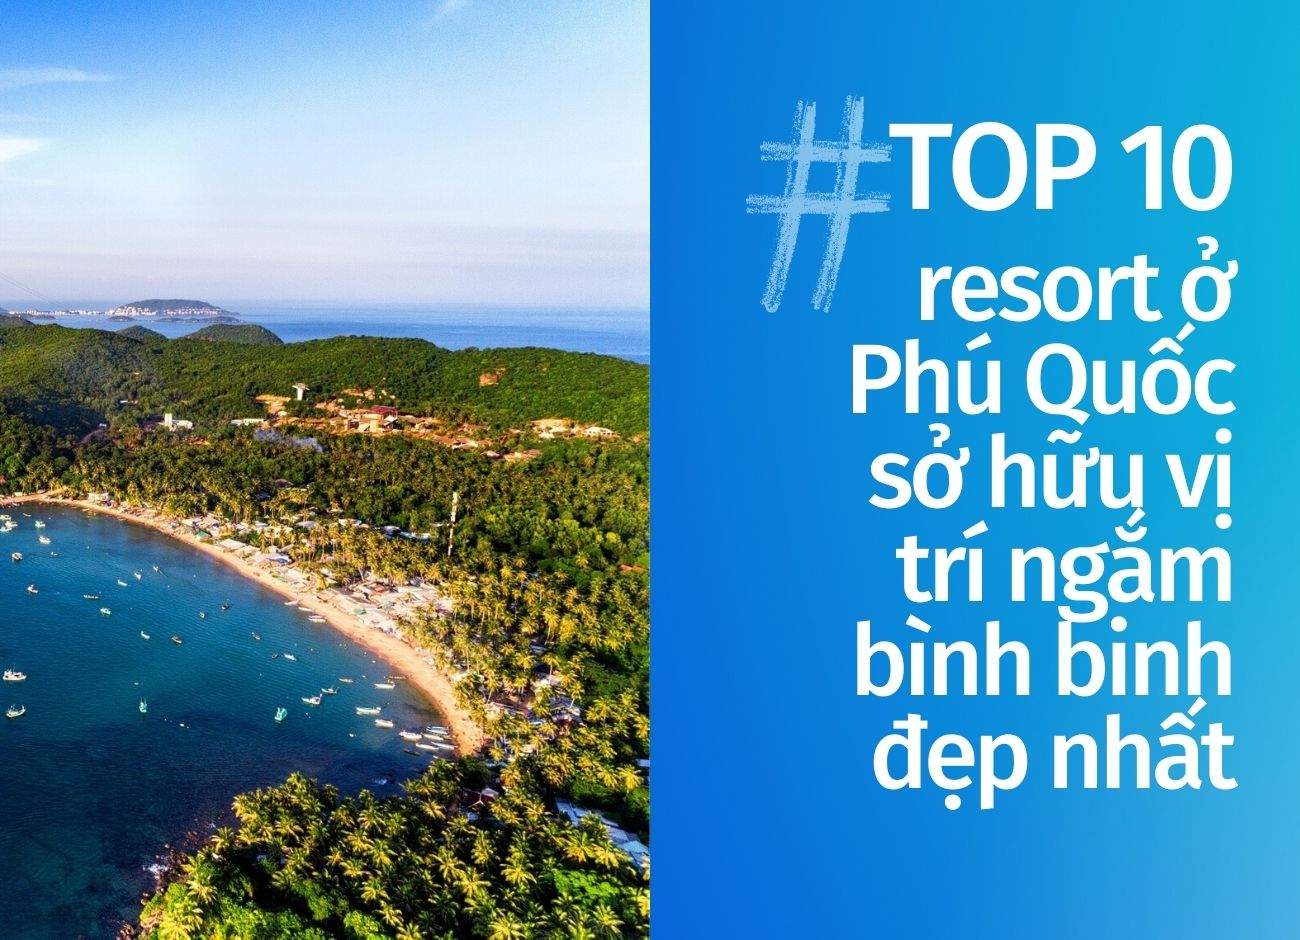 Top 10 resort Phú Quốc sở hữu vị trí ngắm bình binh đẹp nhất cập nhật tháng 06 năm 2022